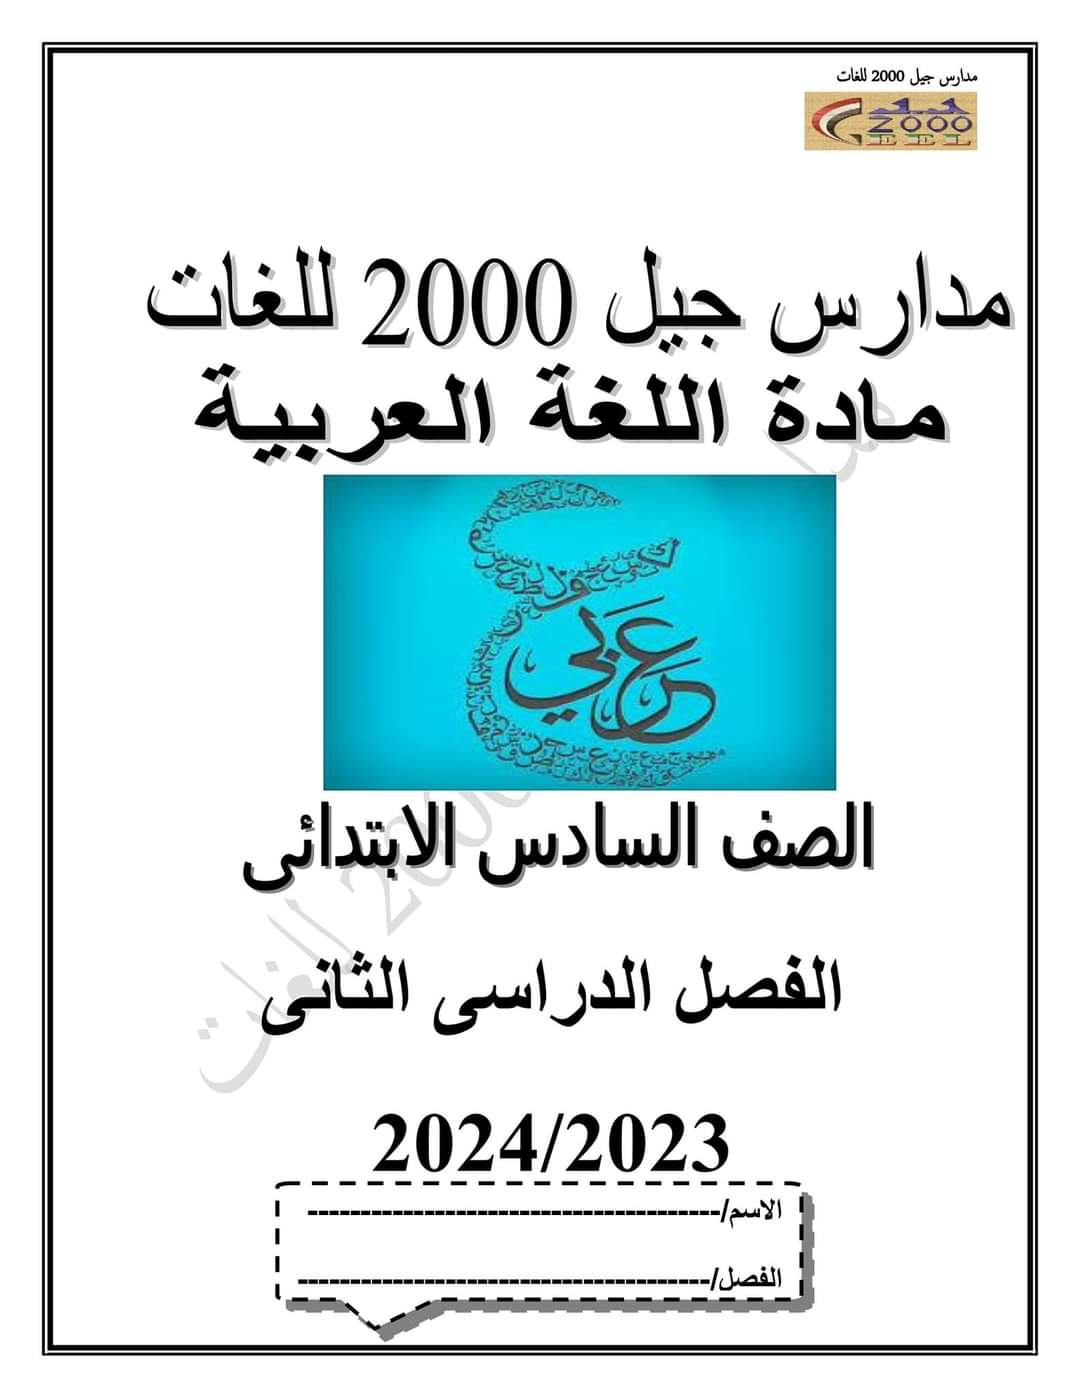 بوكليت اللغة العربية الصف السادس الابتدائي الترم الثاني لمدارس جيل ٢٠٠٠